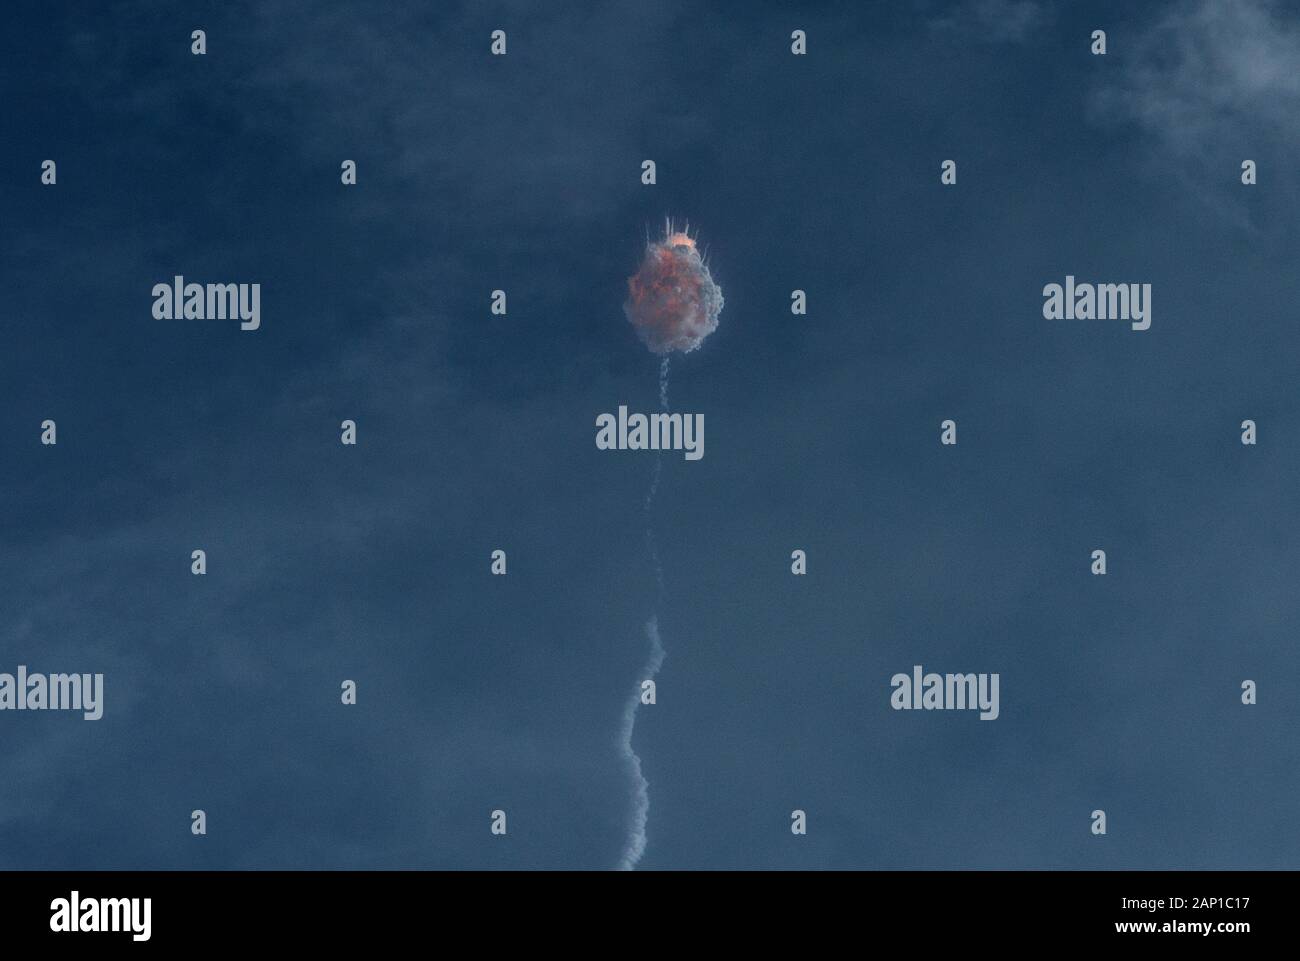 El cohete Falcon 9 de SpaceX se autodestruye después de que la cápsula de astronauta Crew Dragon se separara durante un lanzamiento de prueba en Cabo Cañaveral, Florida. Foto de stock